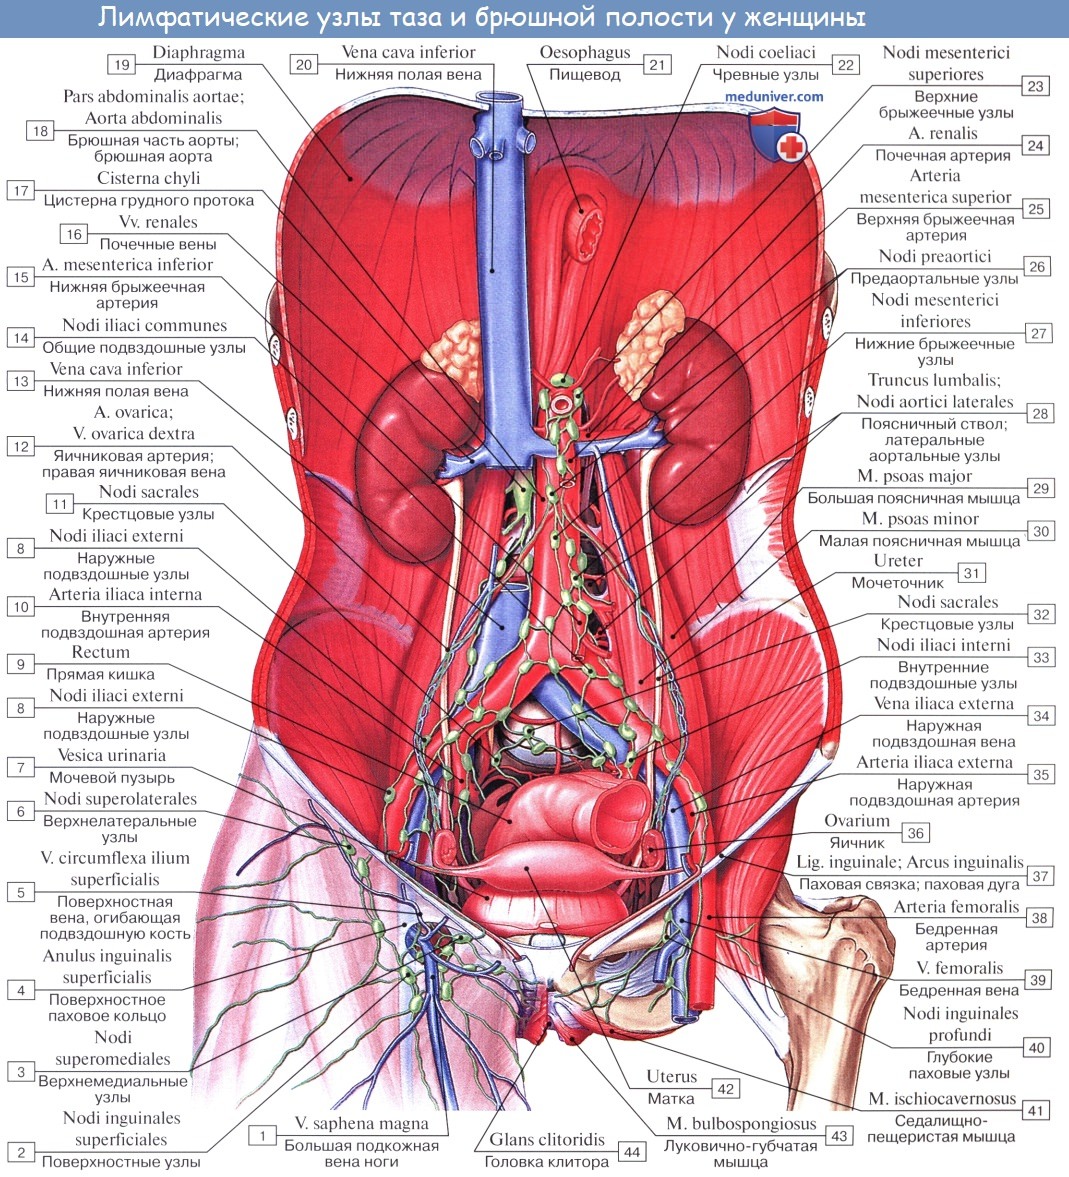 Анатомия: Топография матки. Сосуды (кровоснабжение), лимфатический отток от матки. Иннервация (нервы)матки